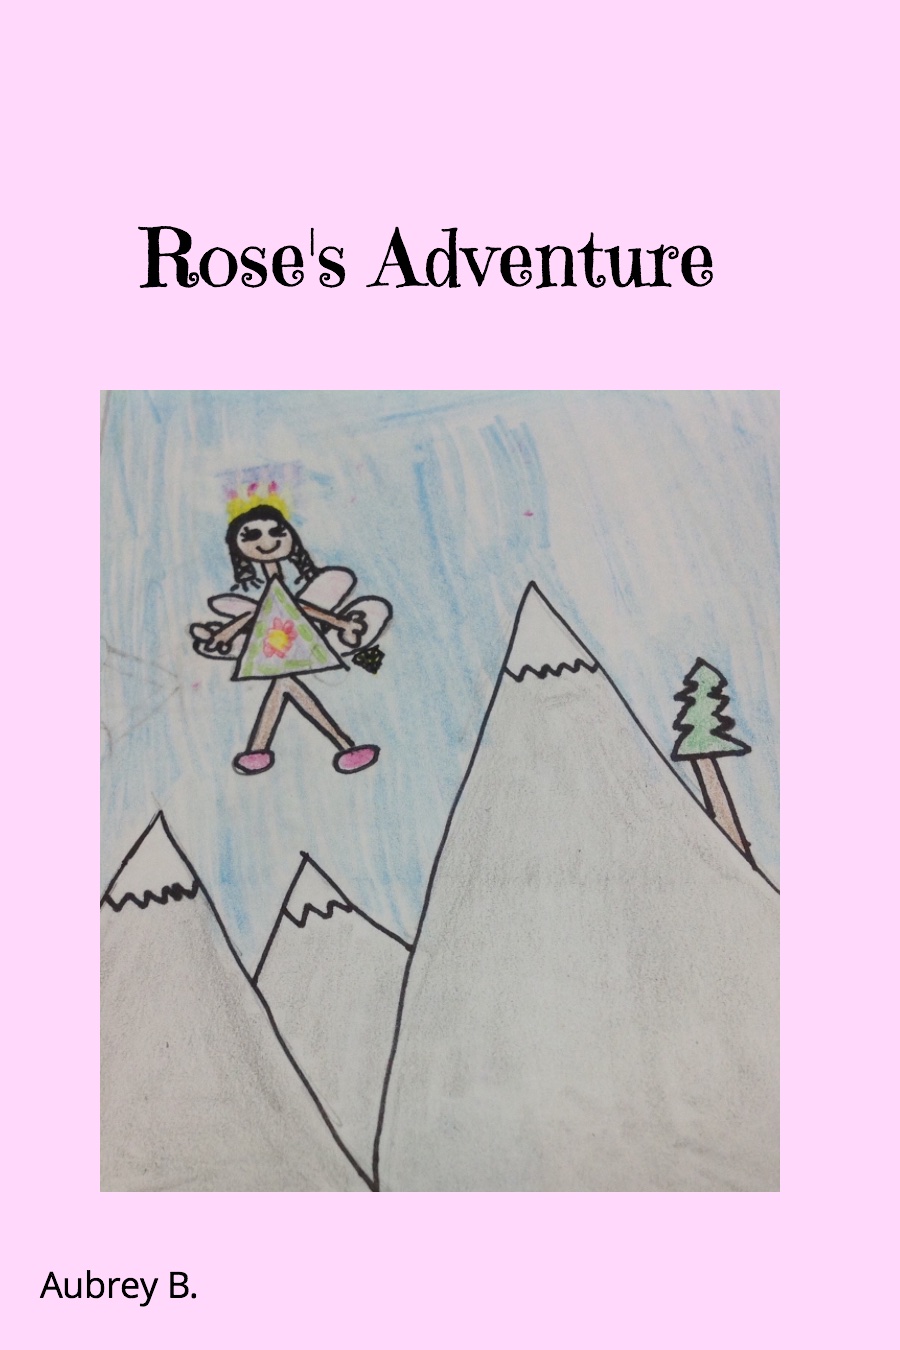 Rose’s Adventure by Aubrey B